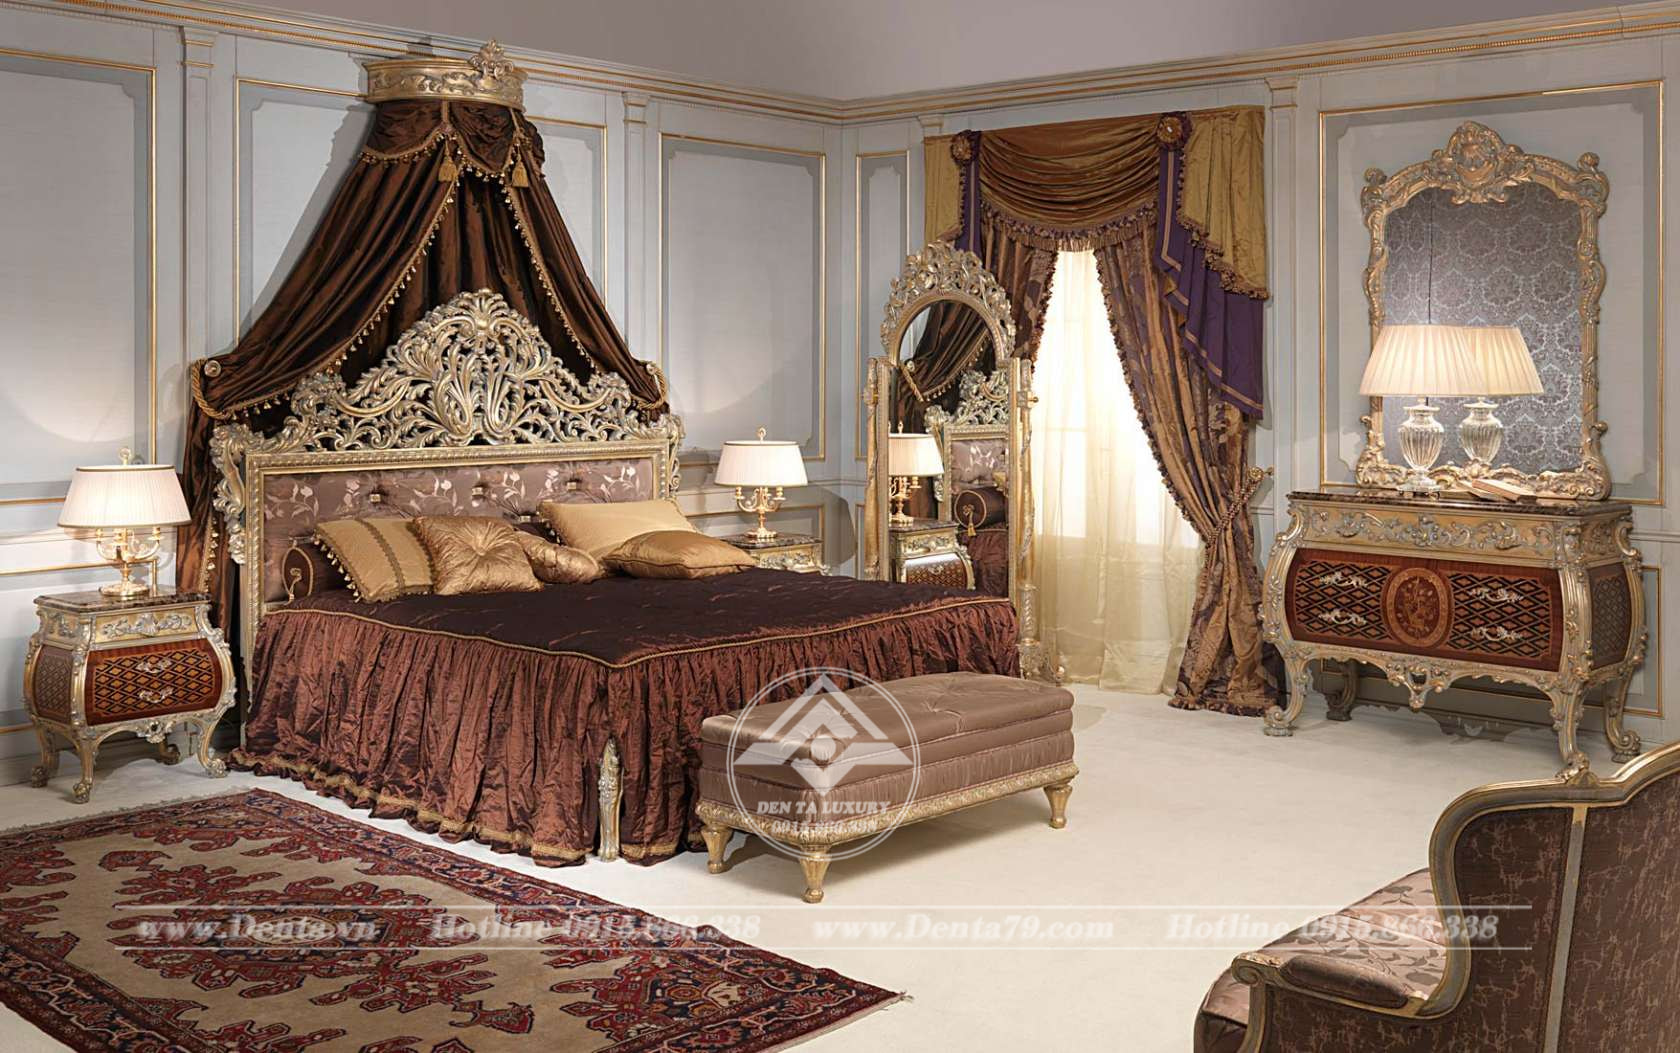 mẫu phòng ngủ cổ điển đẹp, đẳng cấp, sang trọng